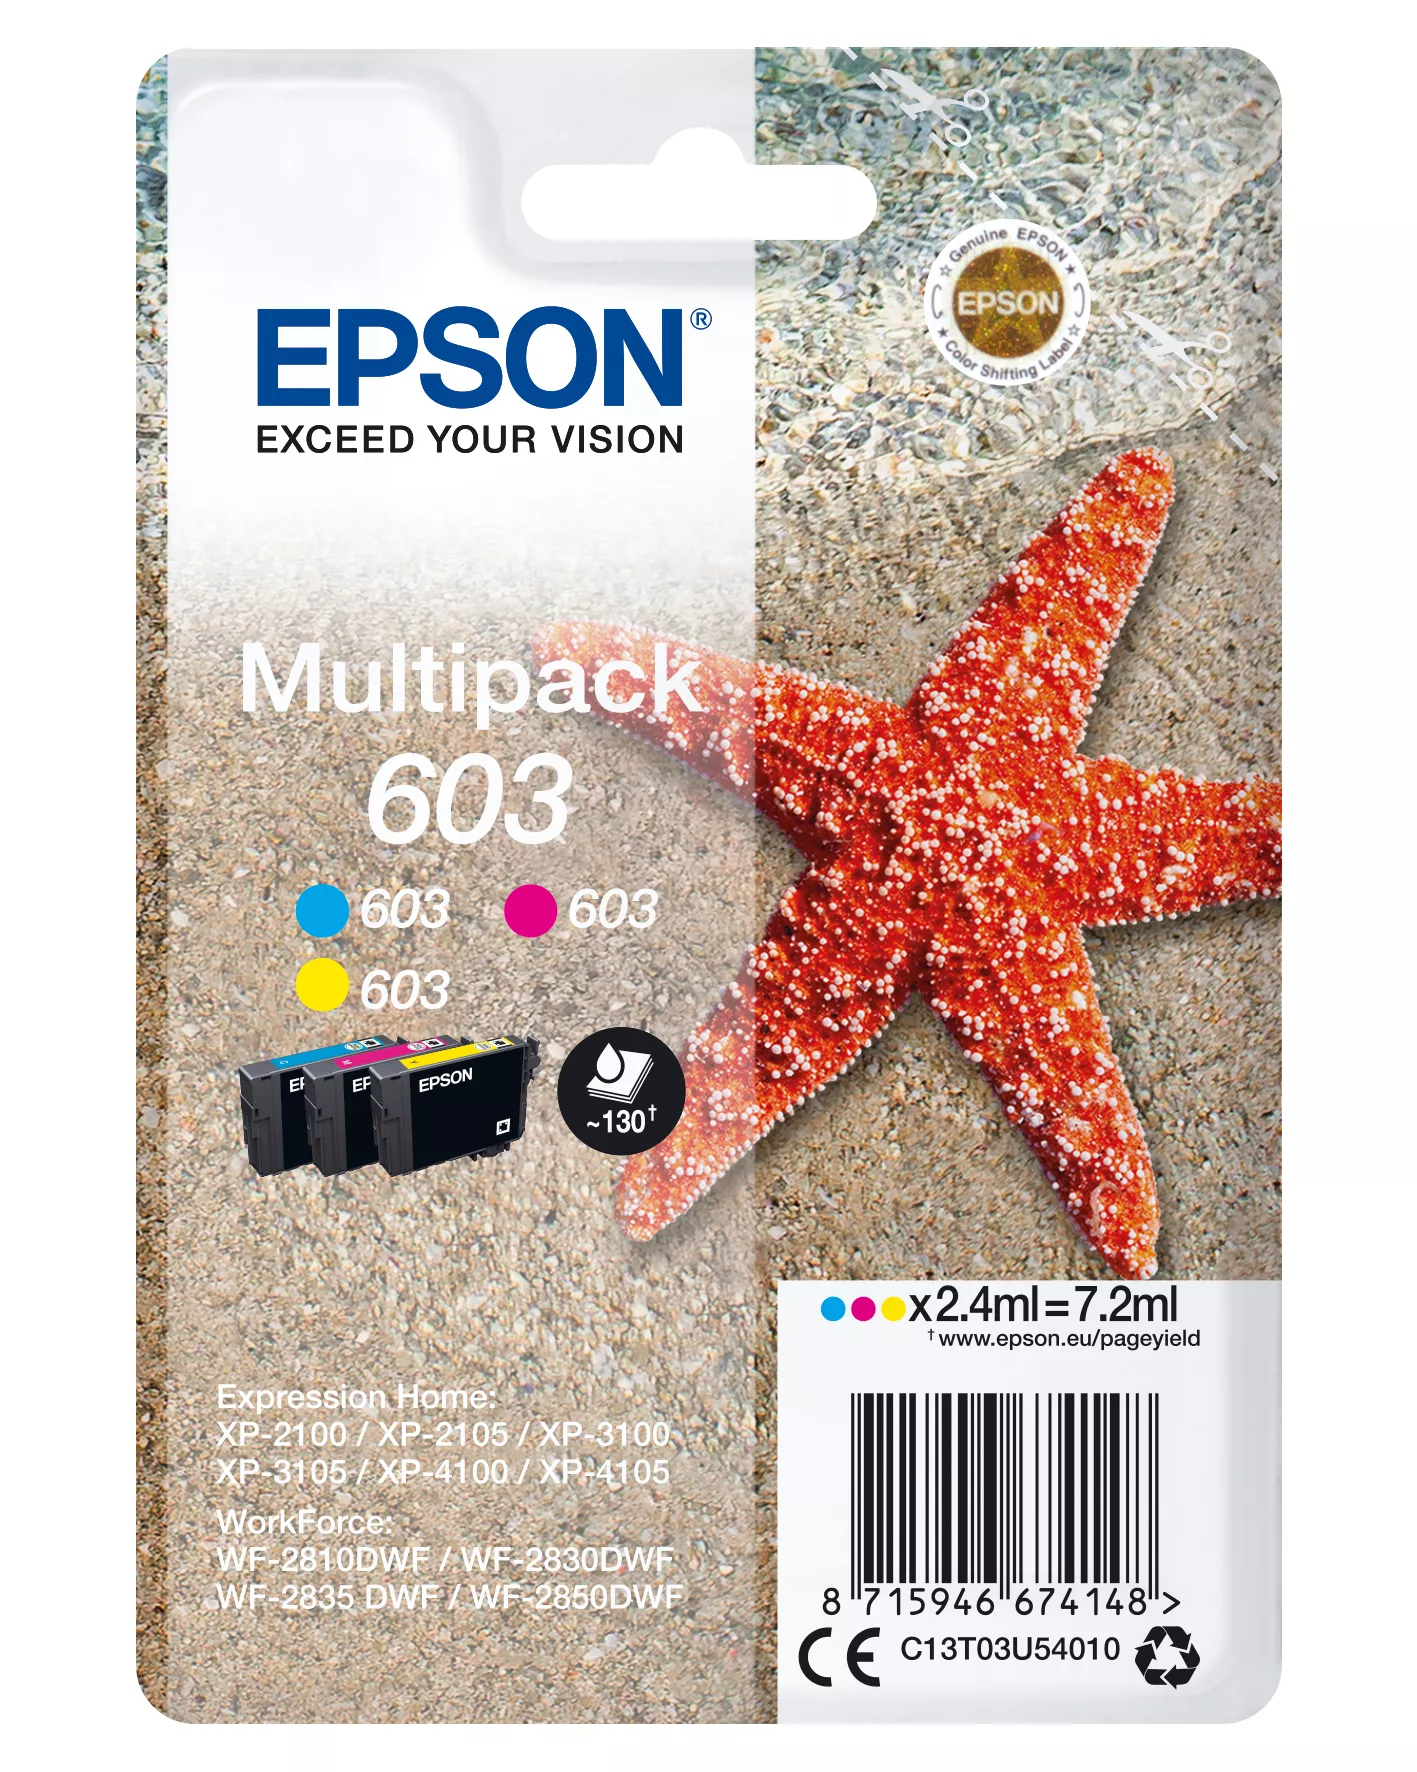 Achat EPSON Multipack 3-colours 603 Ink au meilleur prix